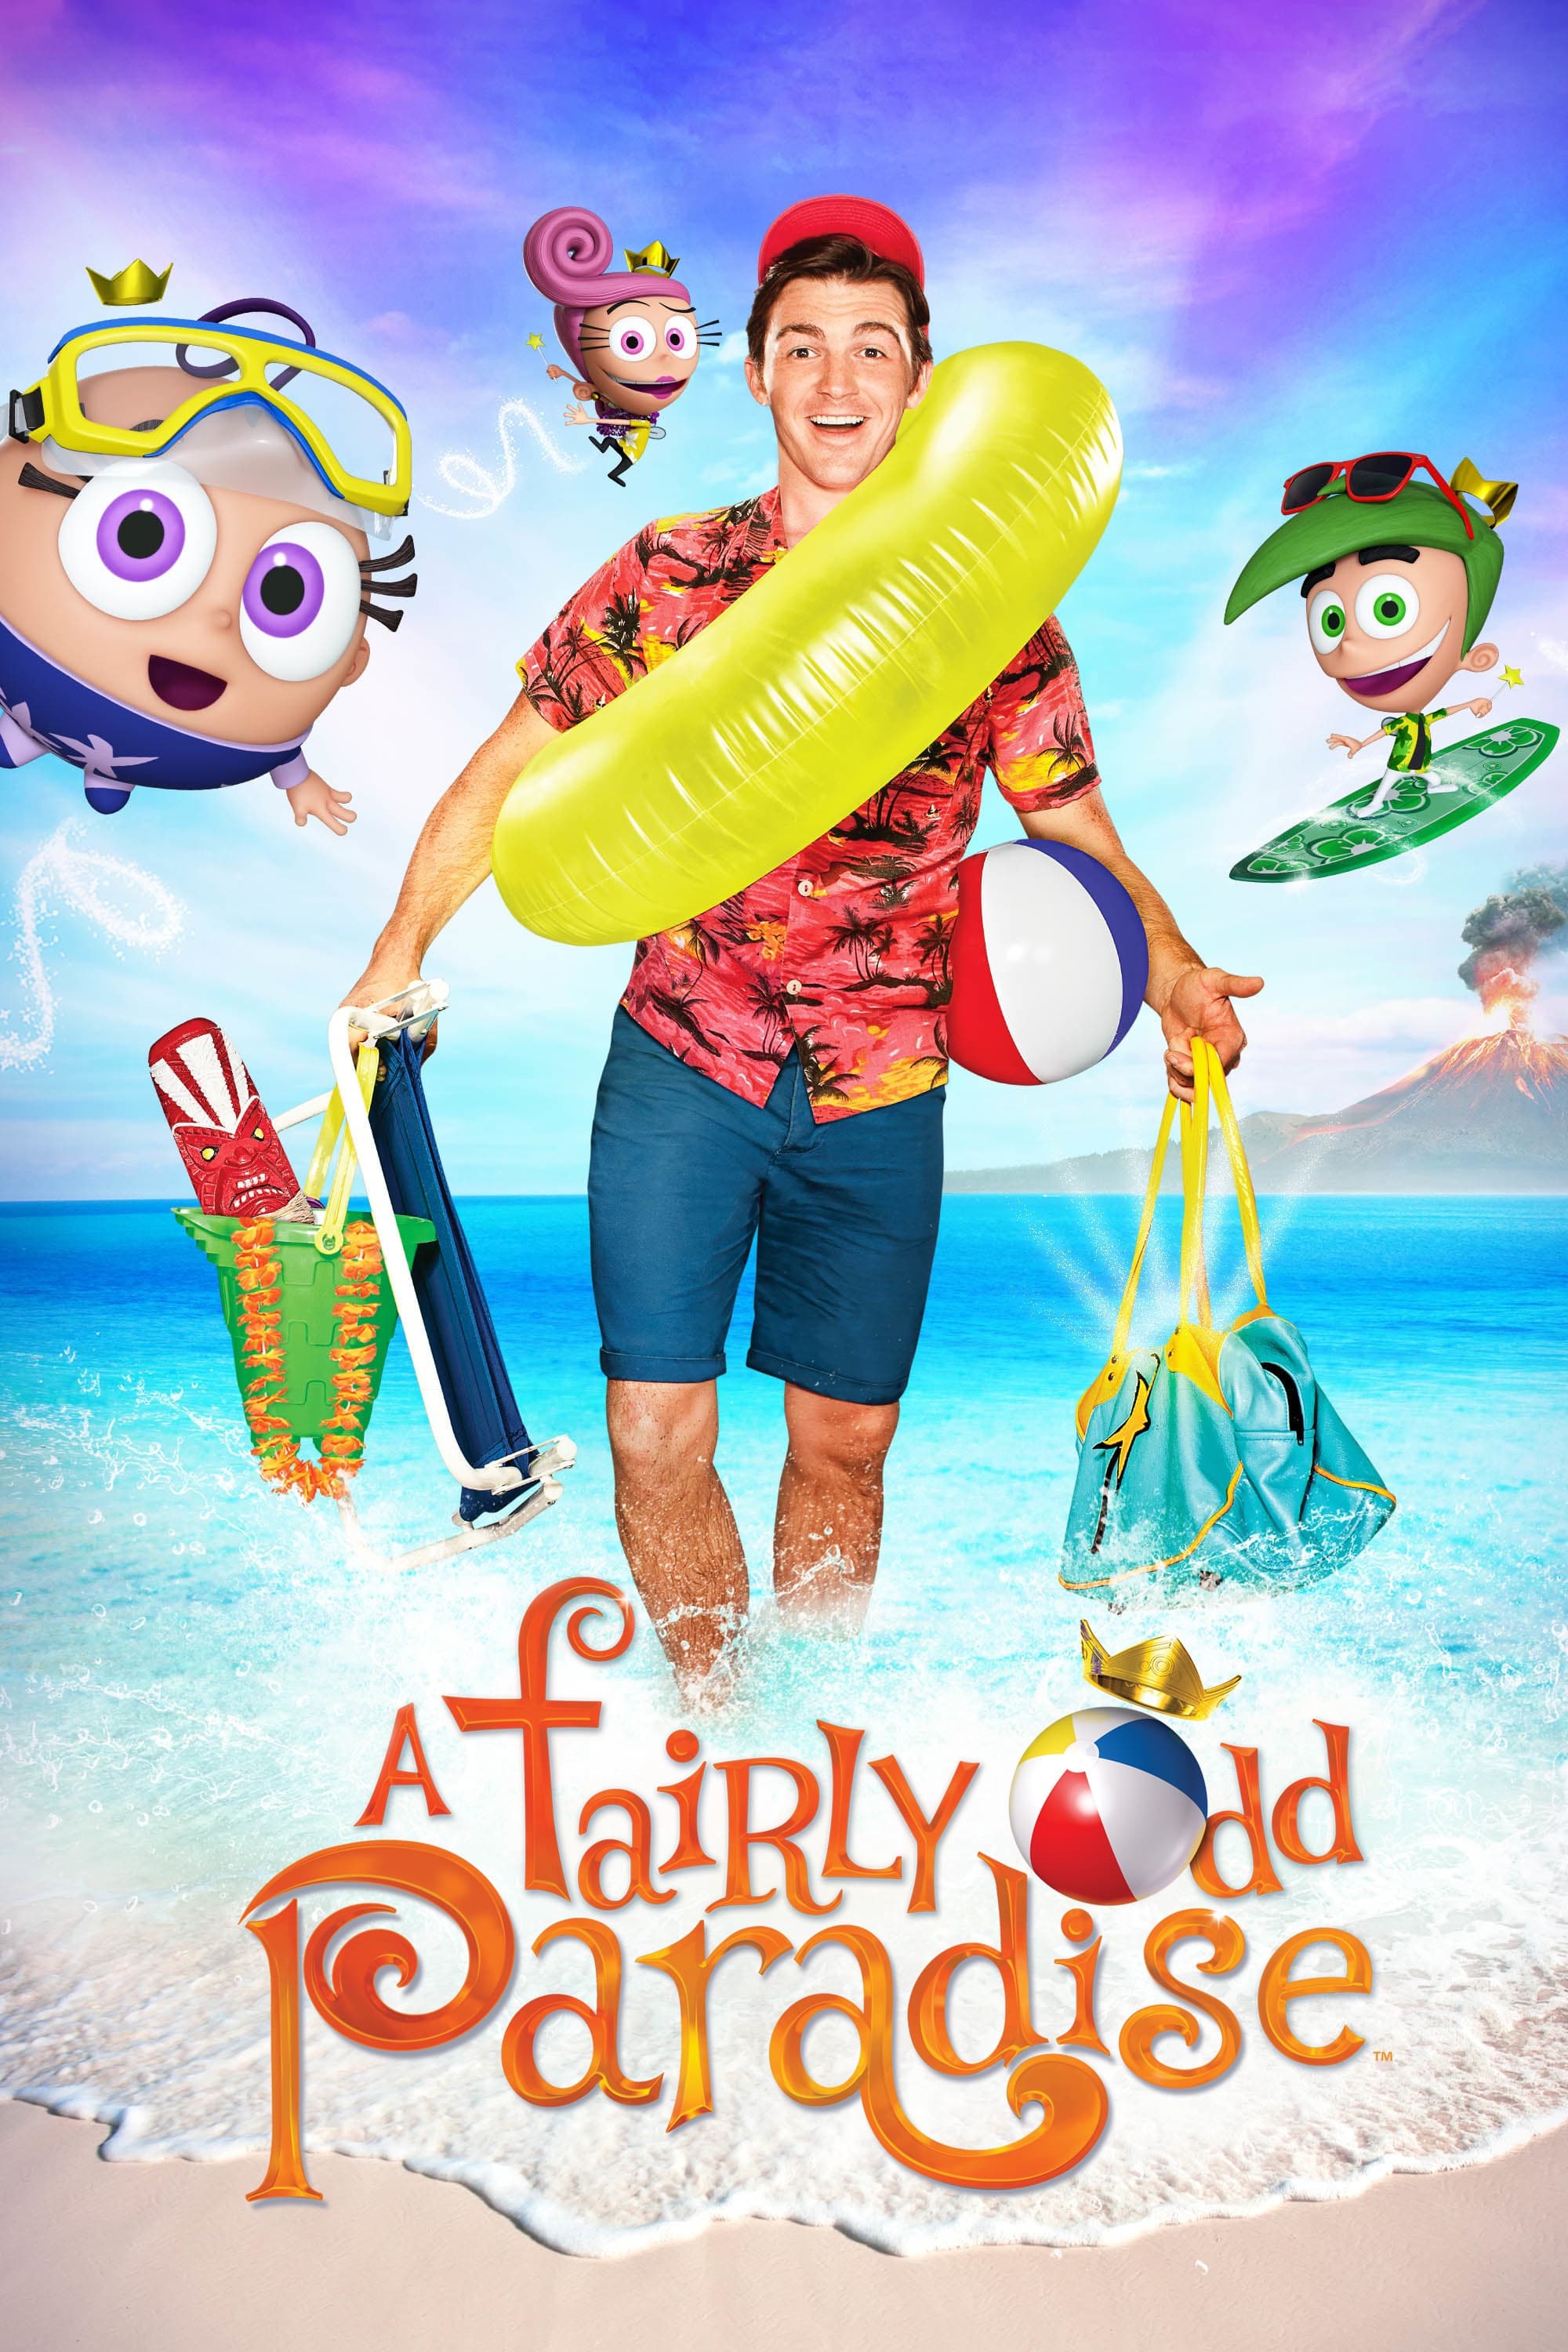 A Fairly Odd Summer (2014)